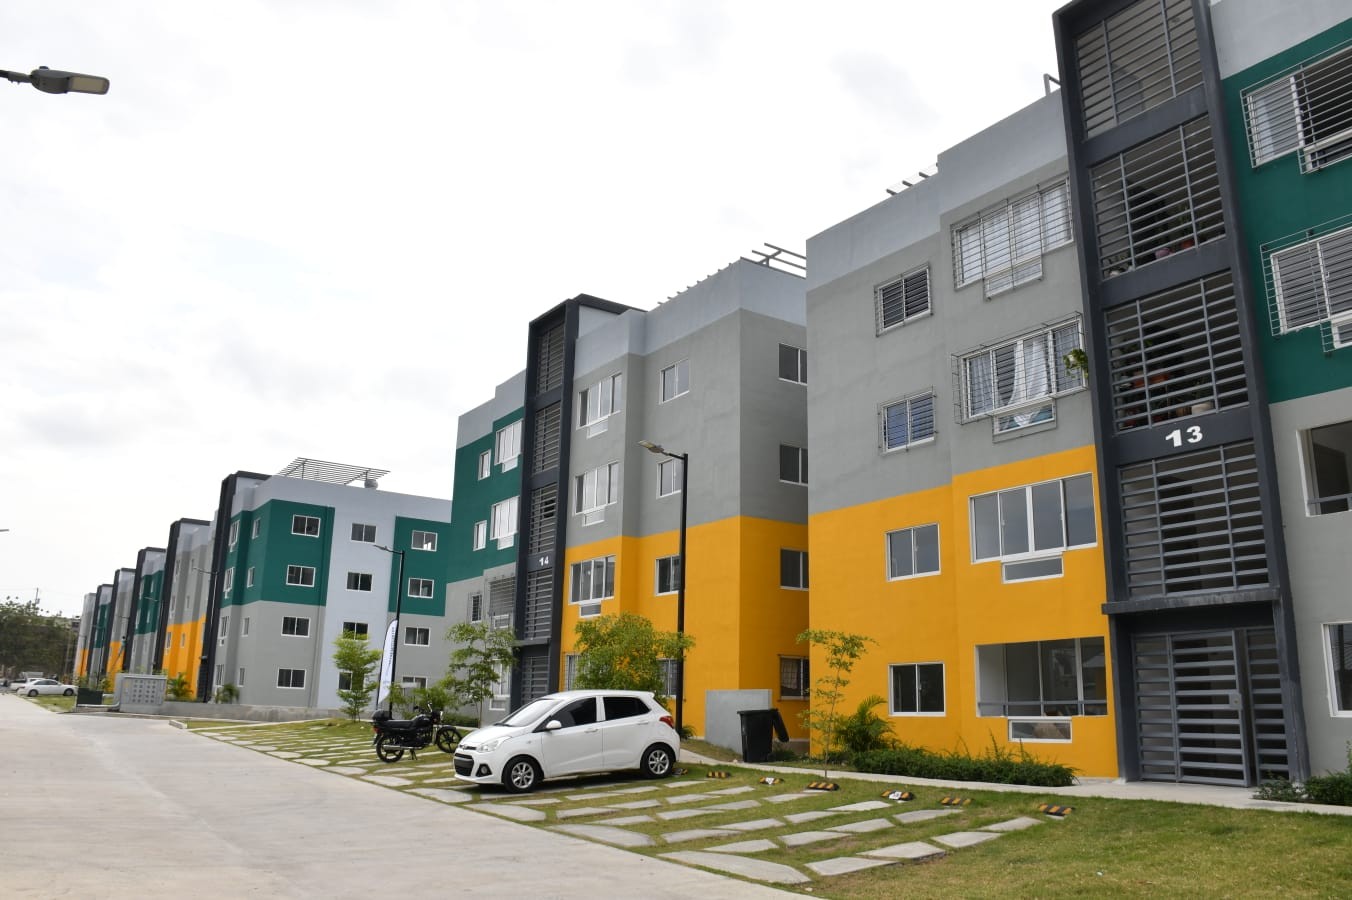 apartamentos - Se vende proyecto residencial en Santo Domingo Norte

US$75,000